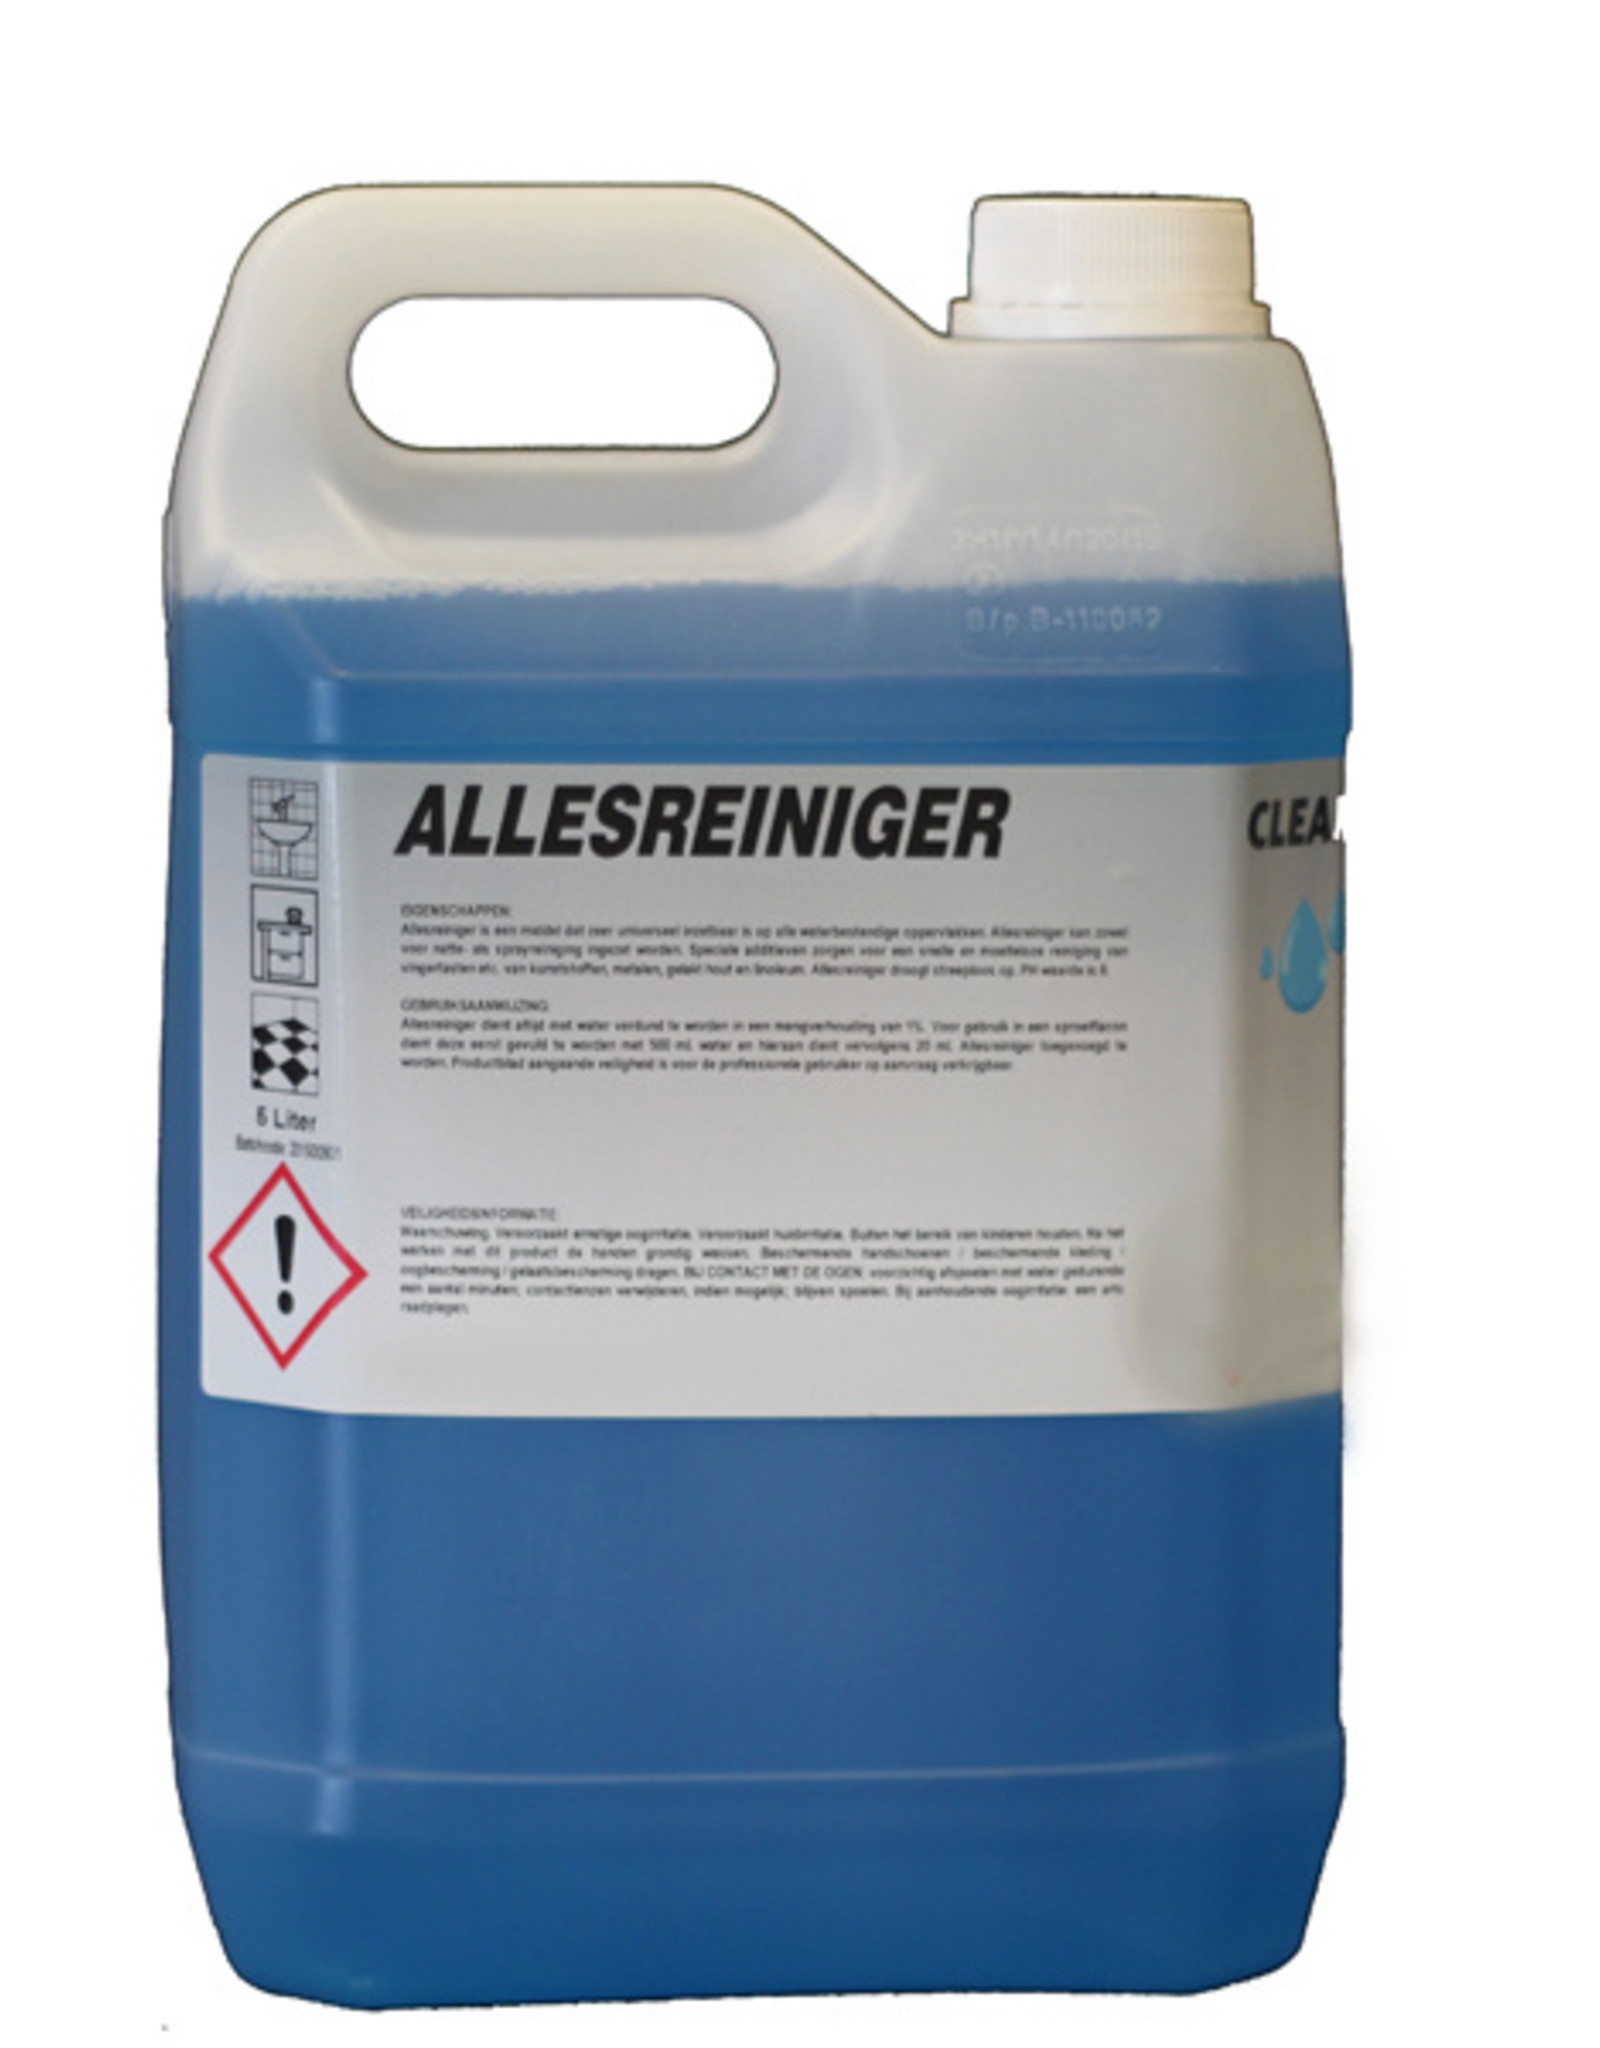 CLEAN Clean Allesreiniger 5 ltr. Voor alle wasbare oppervlakten.